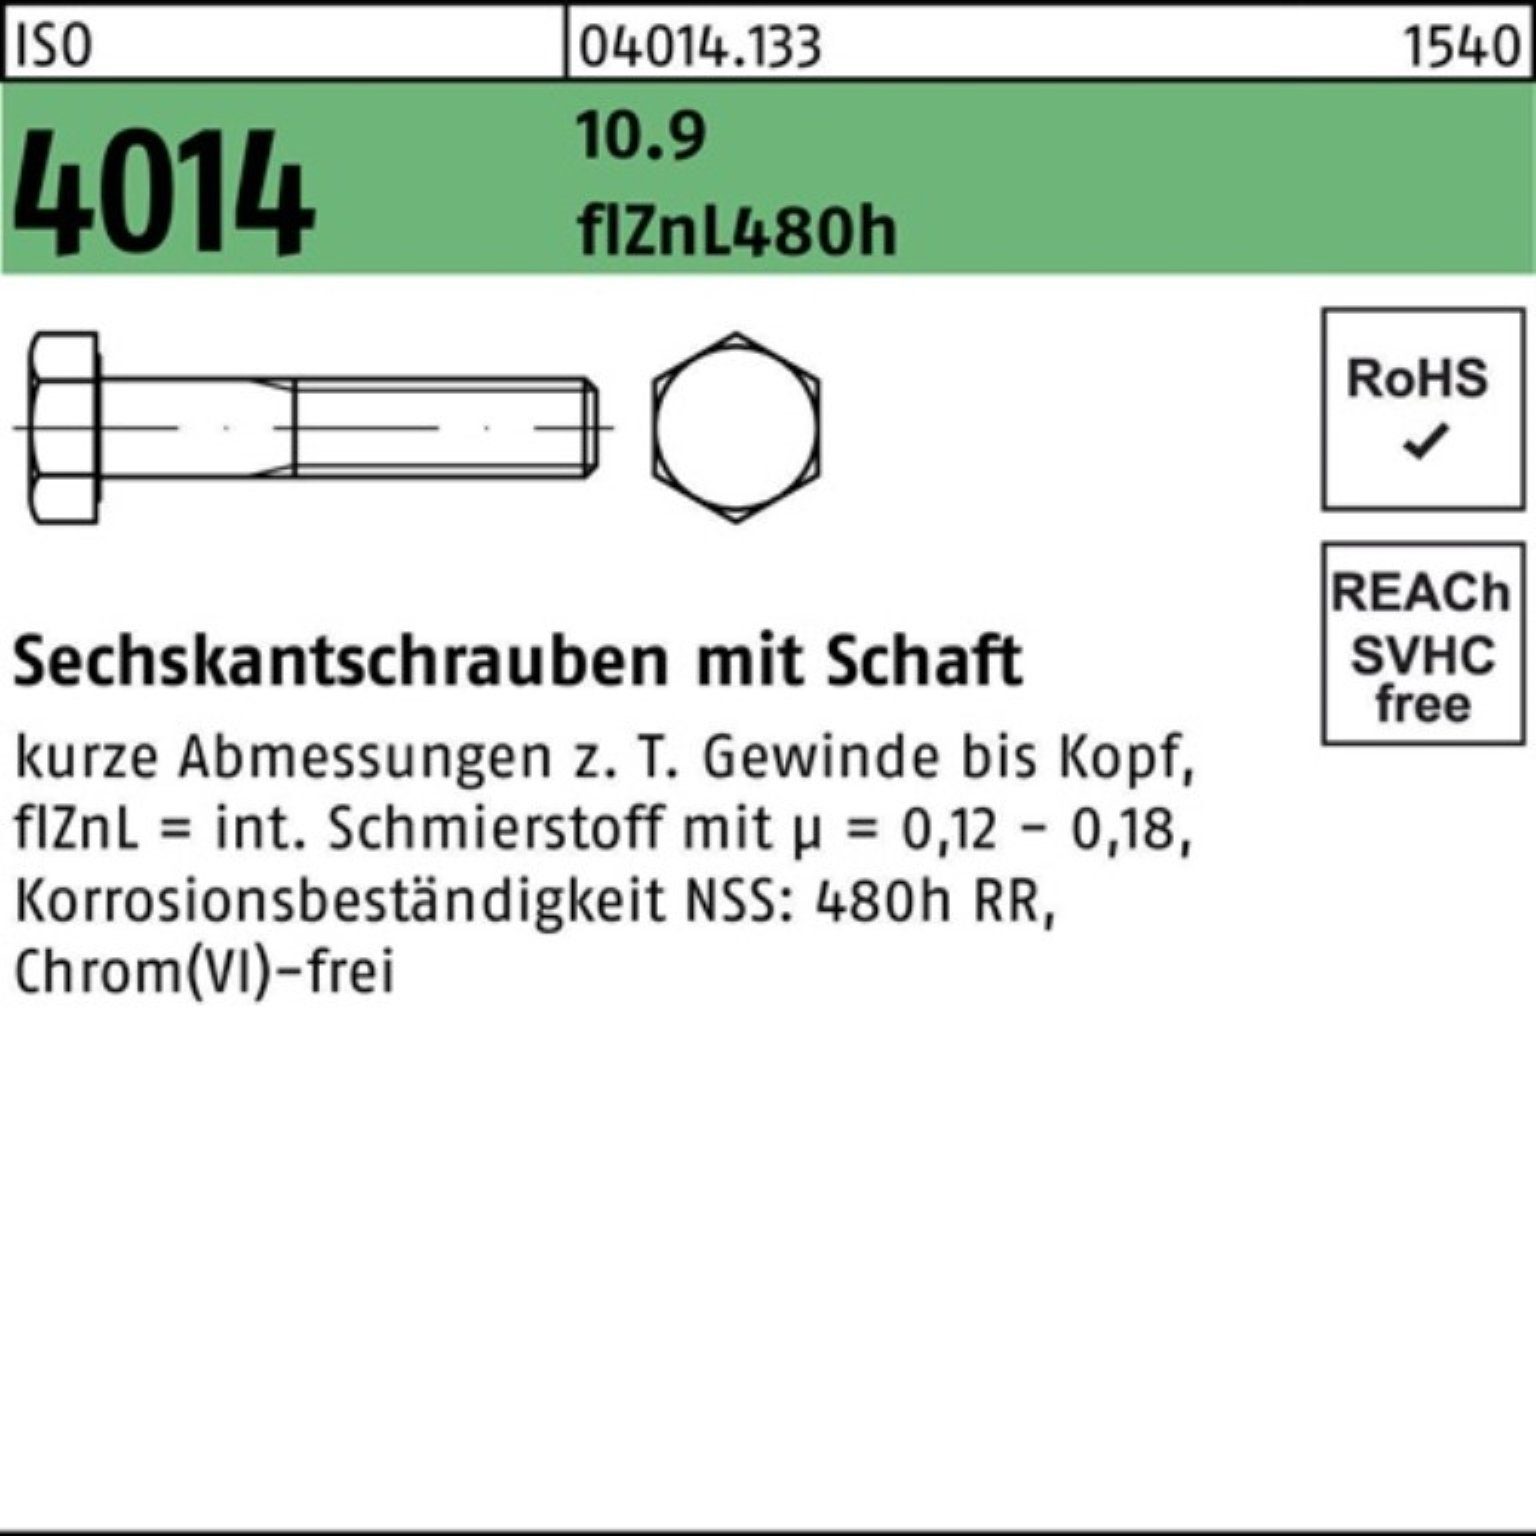 Bufab Sechskantschraube 100er Pack 4014 ISO zinklamellen 90 10.9 Schaft Sechskantschraube M10x